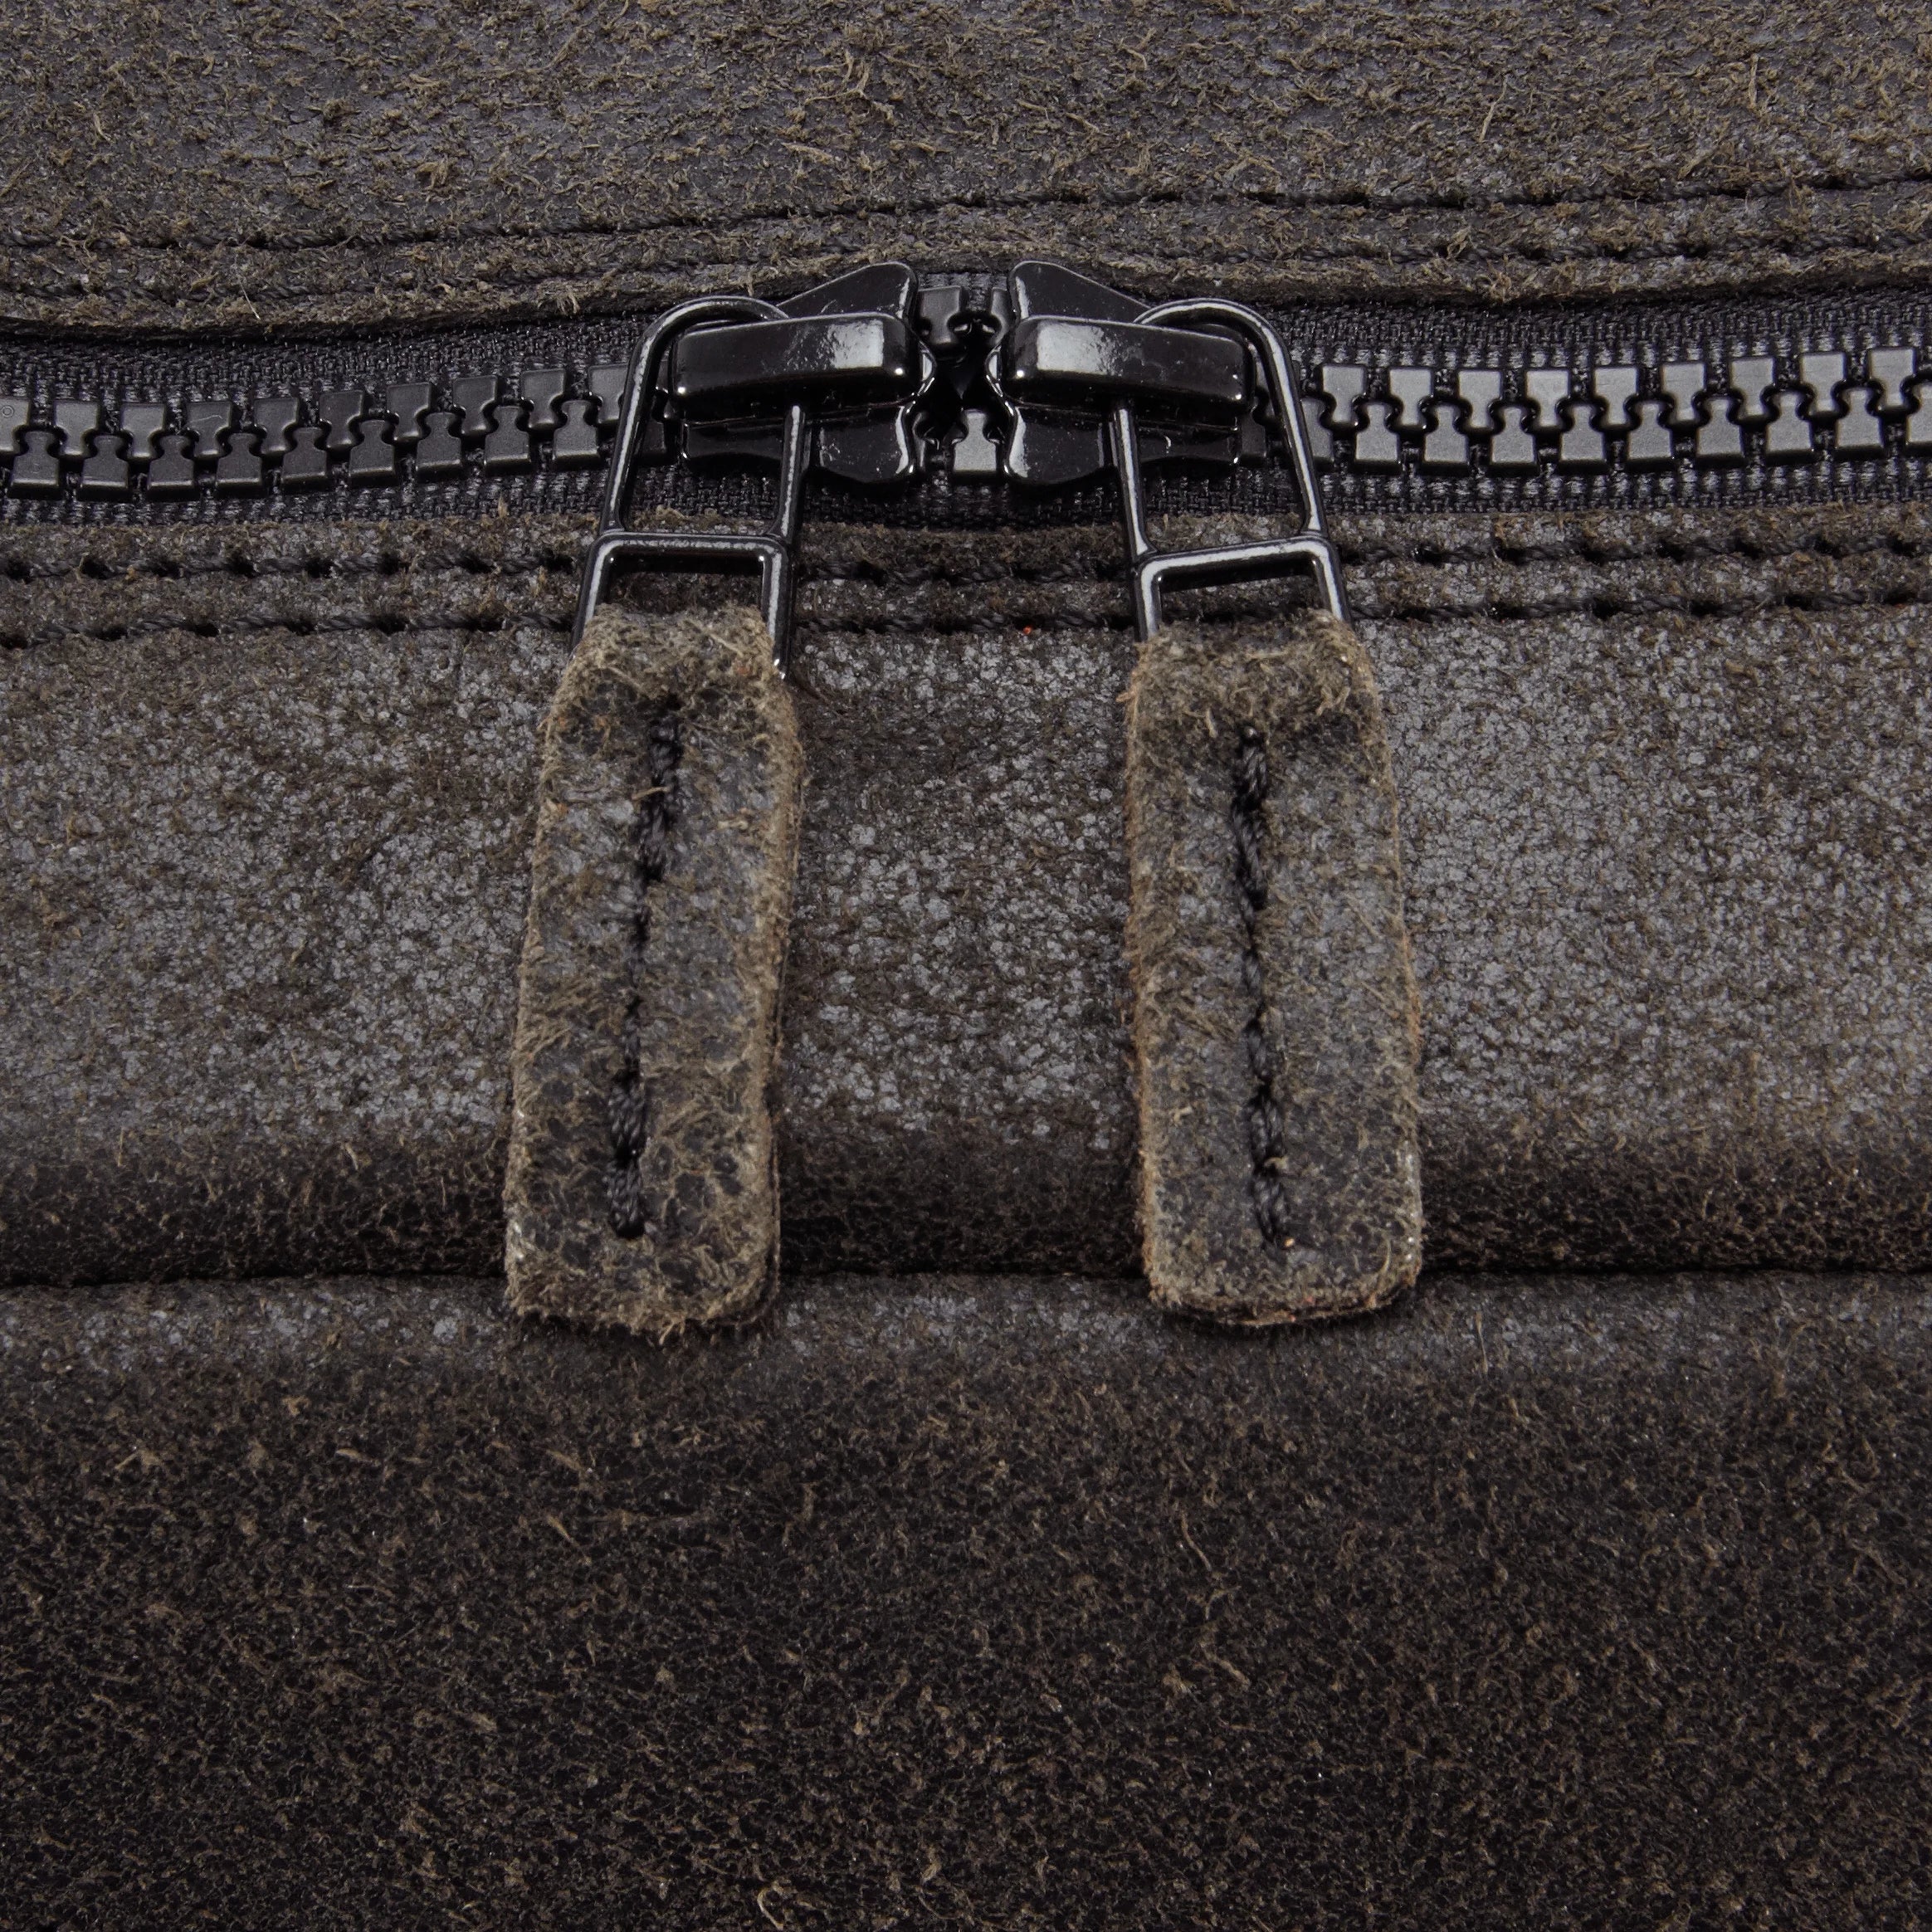 Jost Malmö sac à dos avec compartiment pour ordinateur portable 37 cm - noir